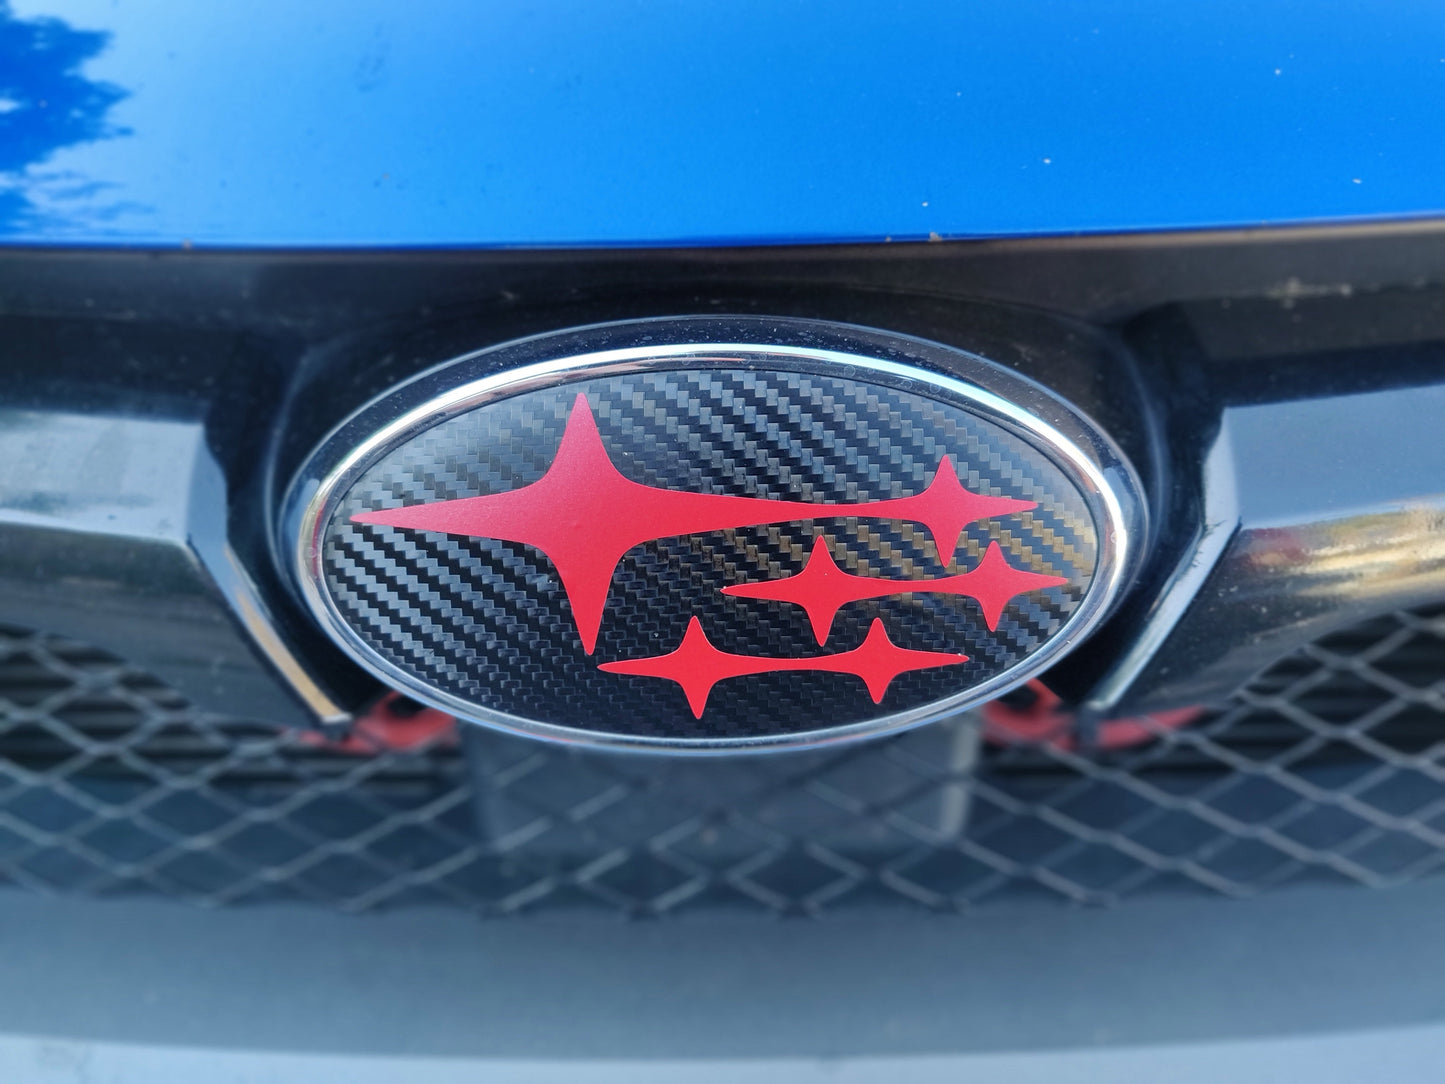 2018-2021 Crosstrek Emblem Overlay DECALS Compatible with Subaru Crosstrek | Front & Rear Set